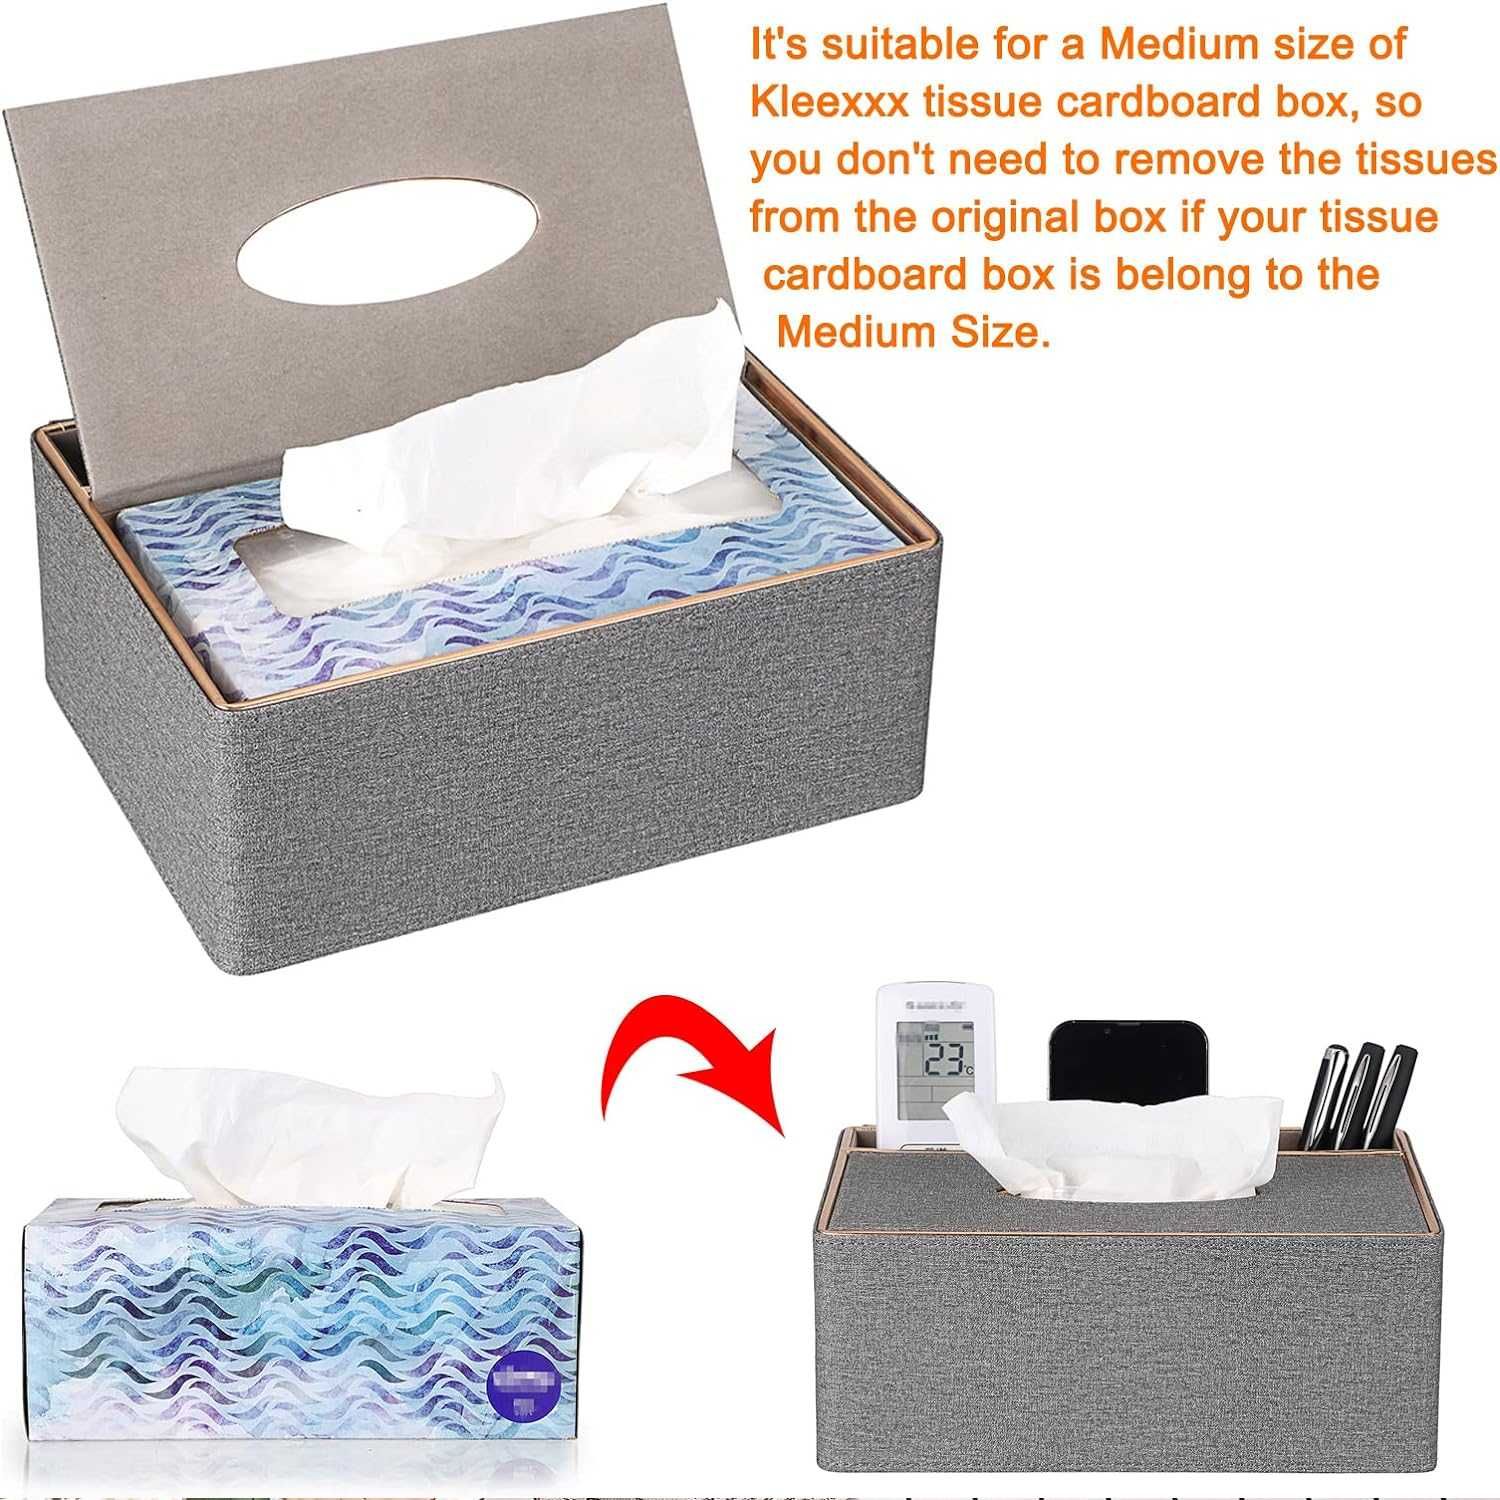 Nowe materiałowe szare pudełko /szkatułka /gablotka /materiał /5297